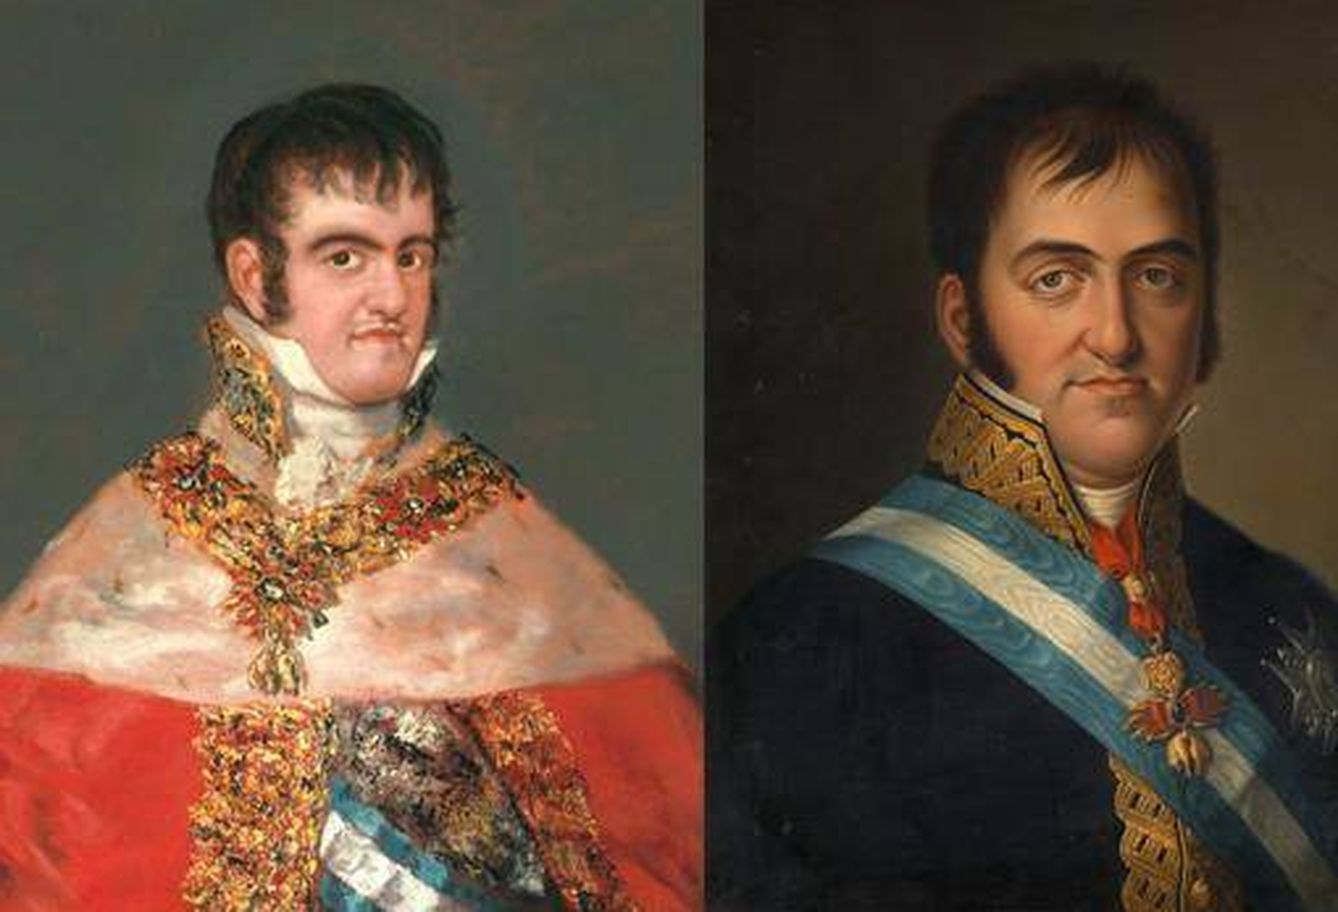 'Fernando VII con manto real' de Goya (1814-1815) y 'Fernando VII' de Luis de la Cruz y Ríos (1825).